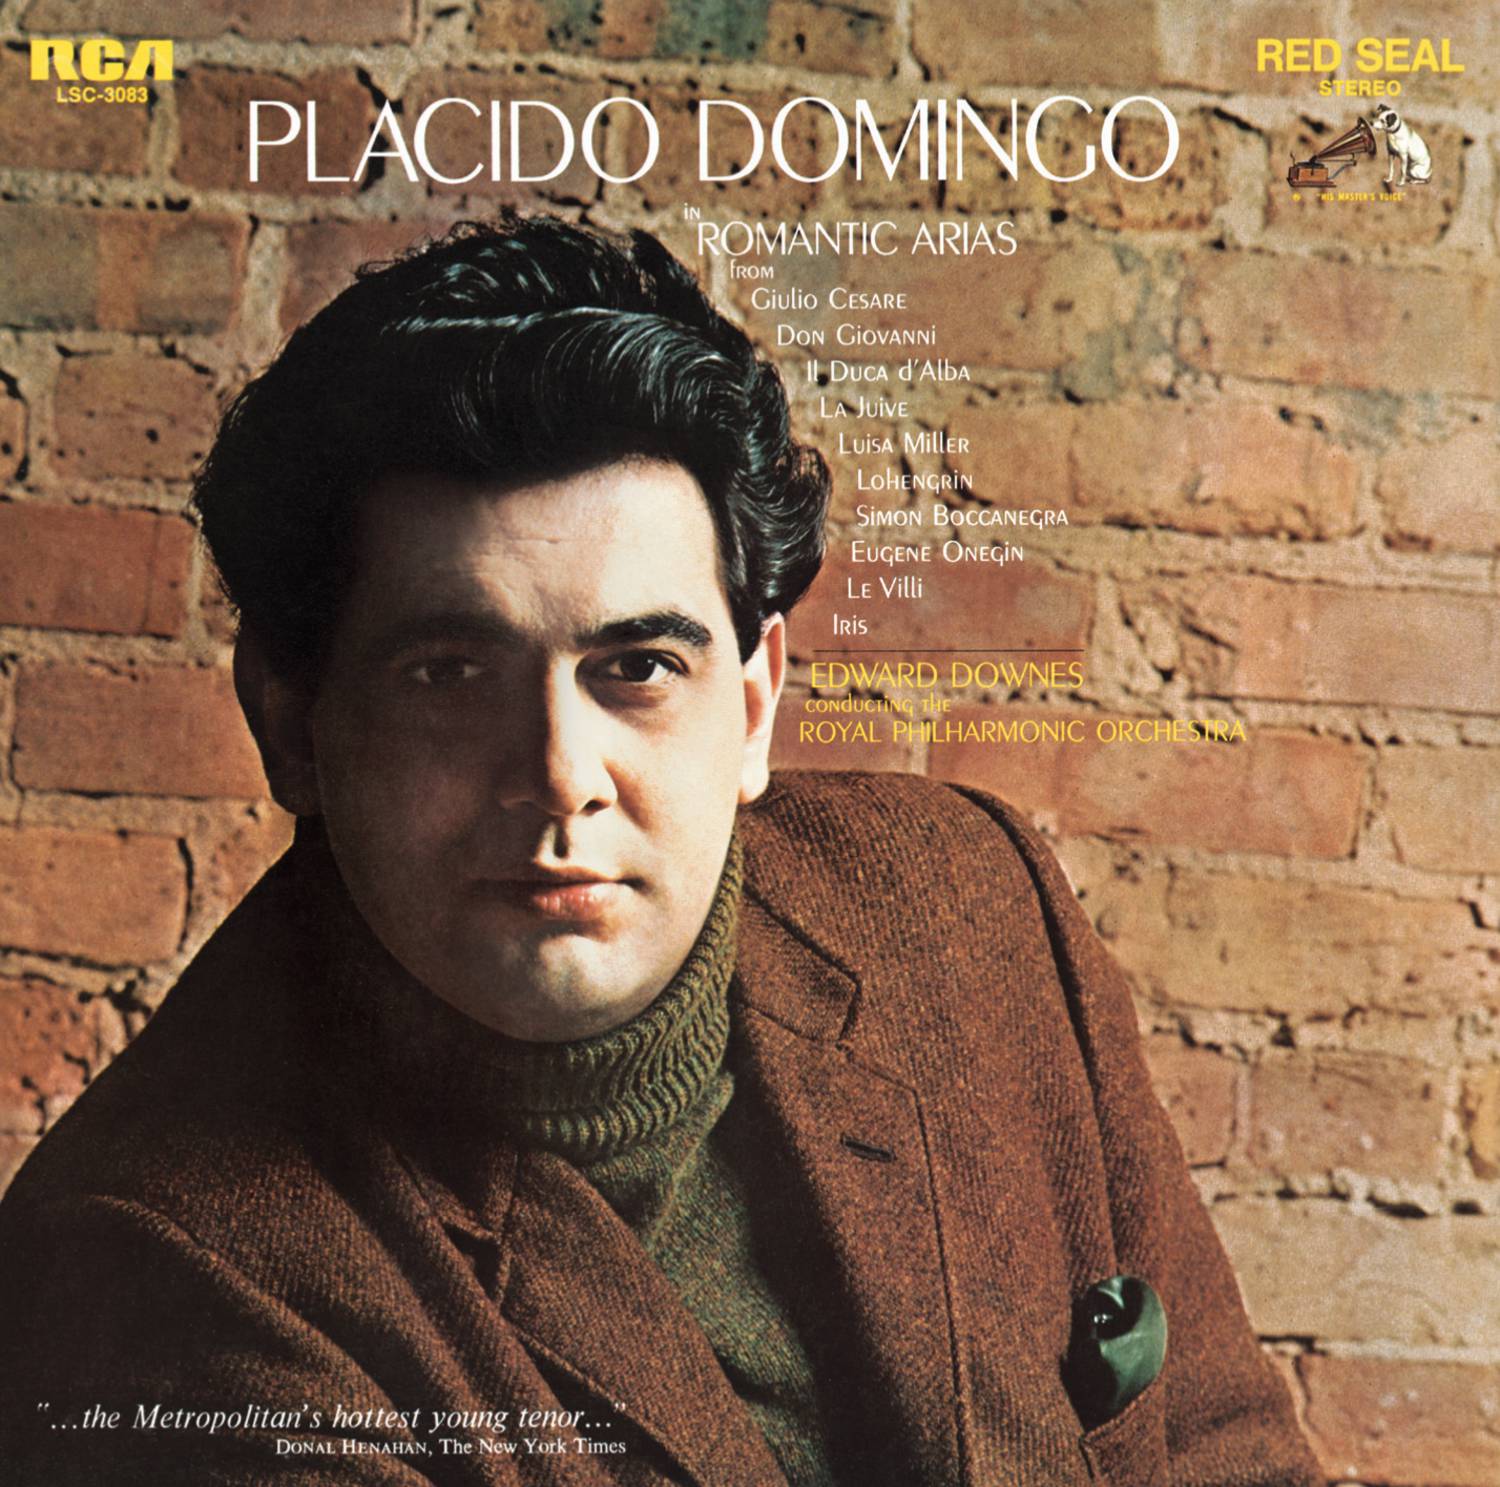 Pla cido Domingo in Romantic Arias  Sony Classical Originals